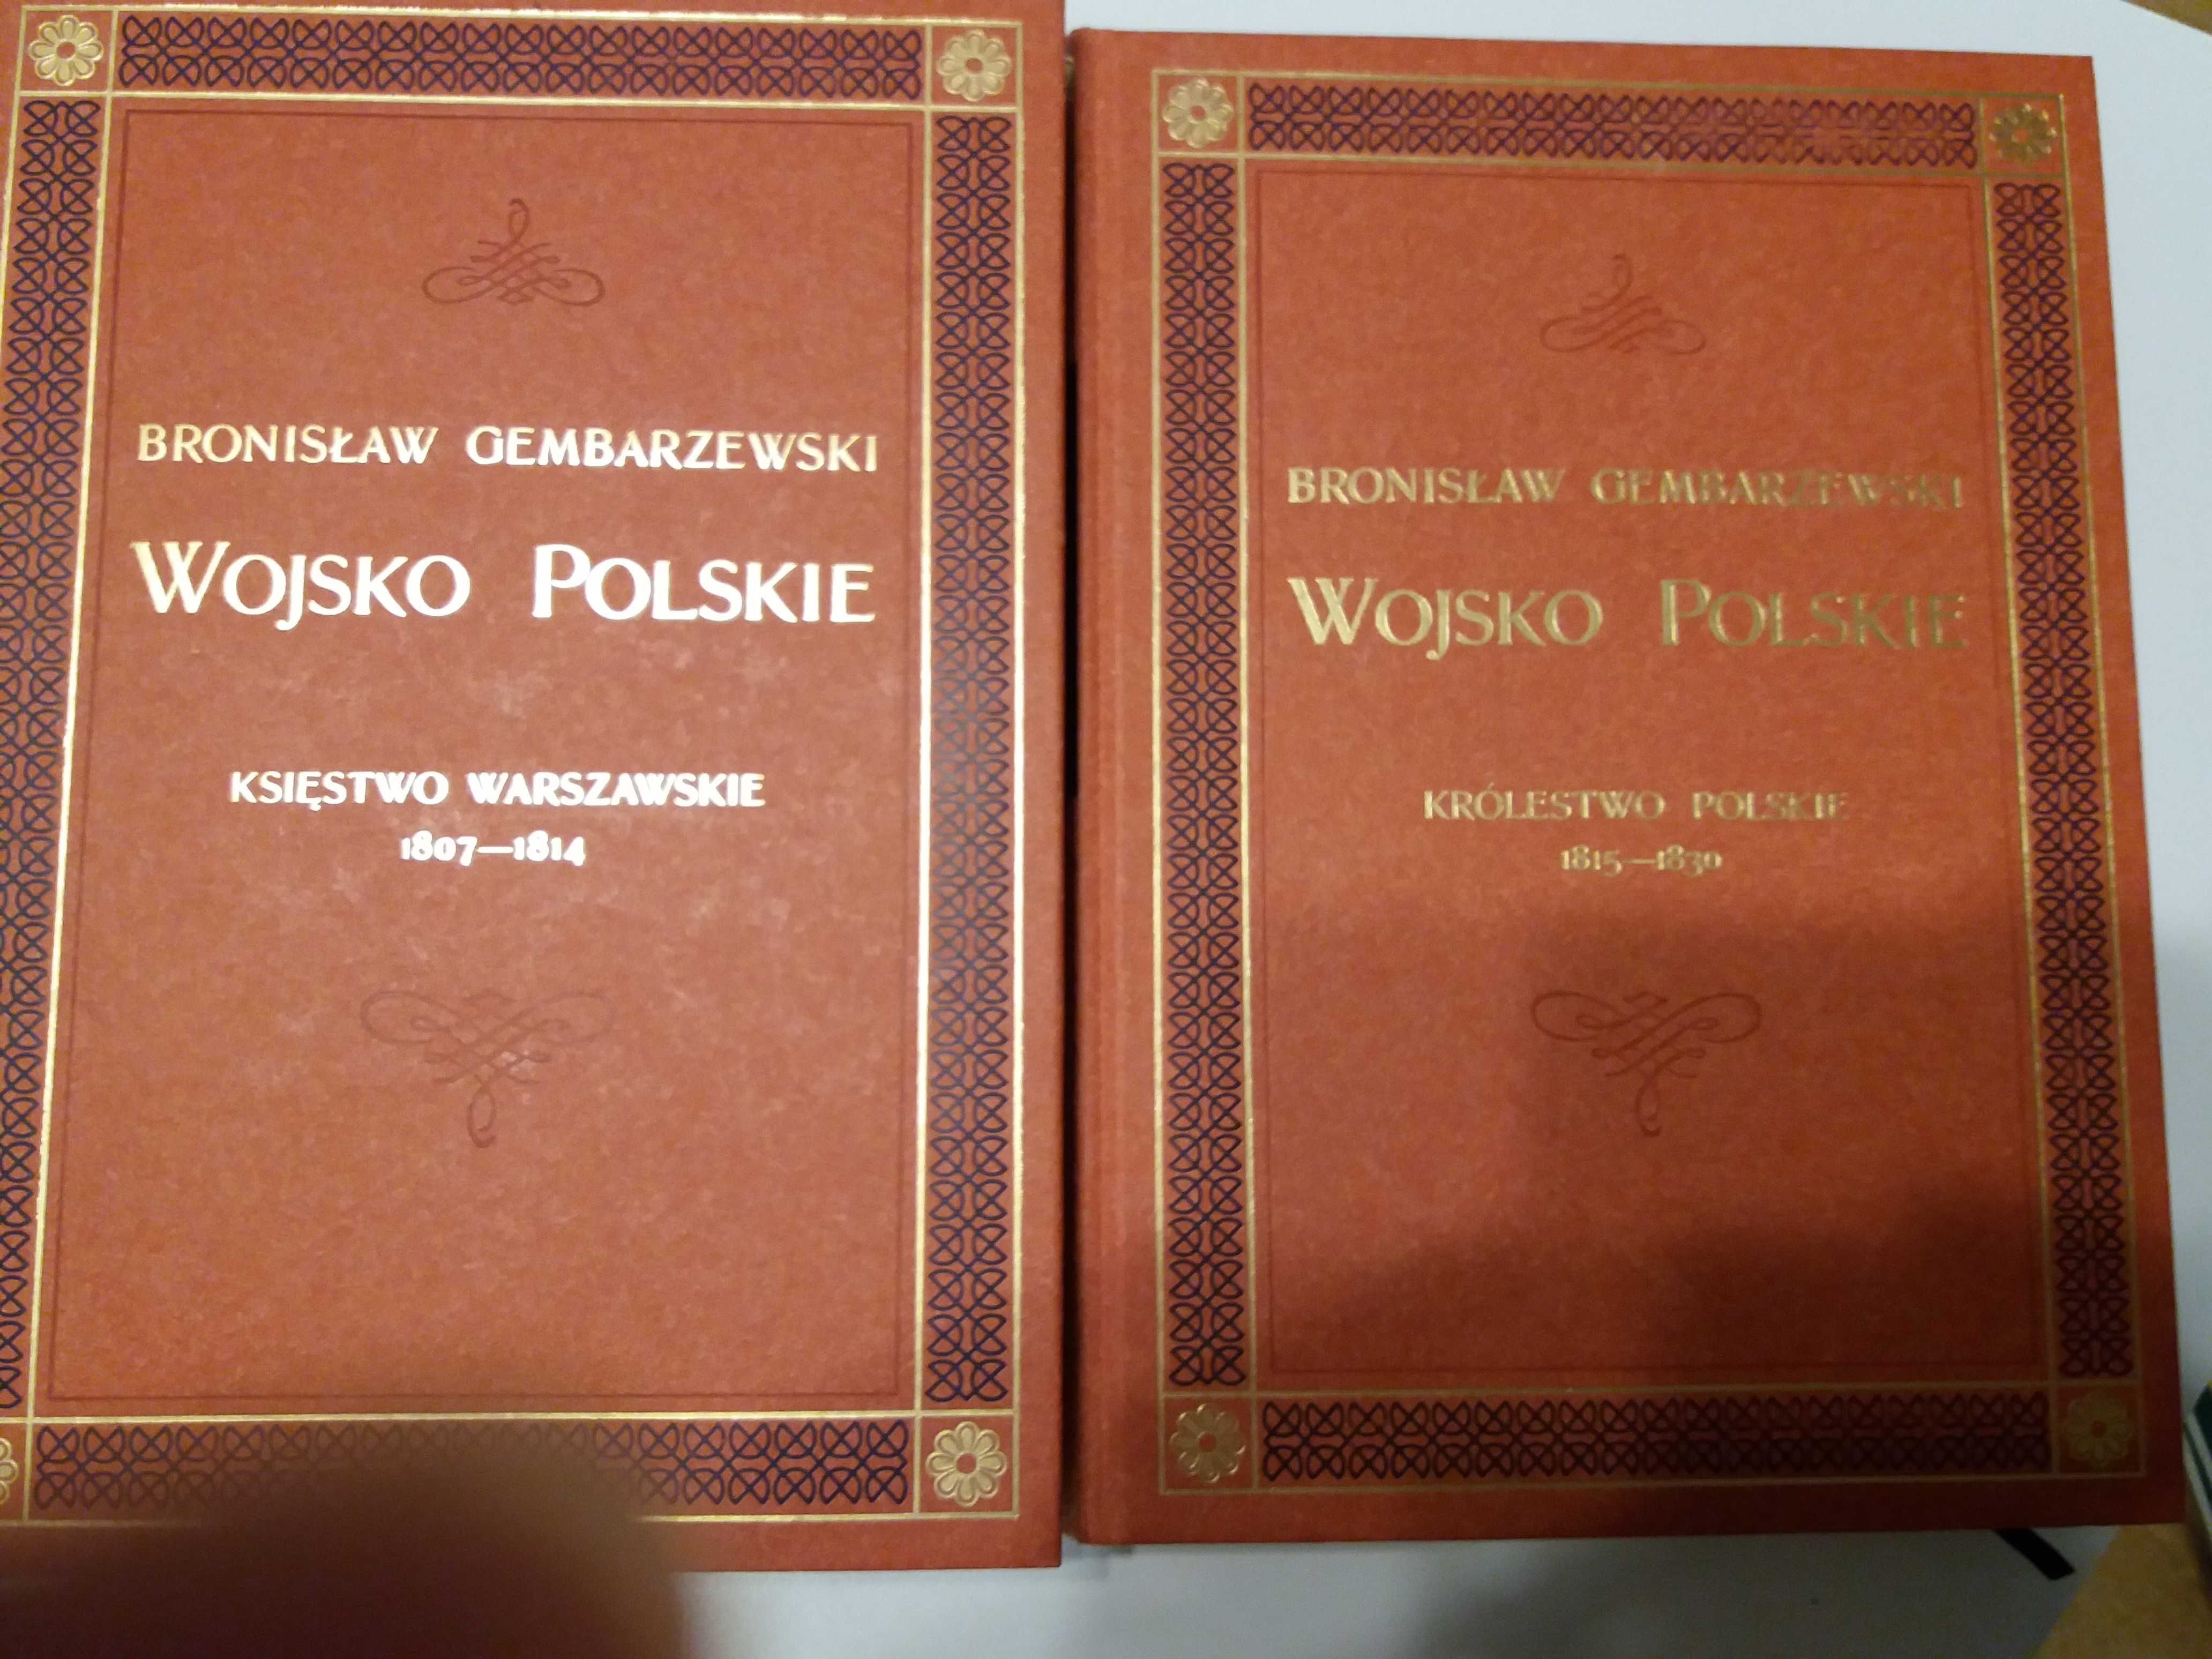 Wojsko Polskie Księstwo Warszawskie Królestwo Polskie B. Gembarzewski